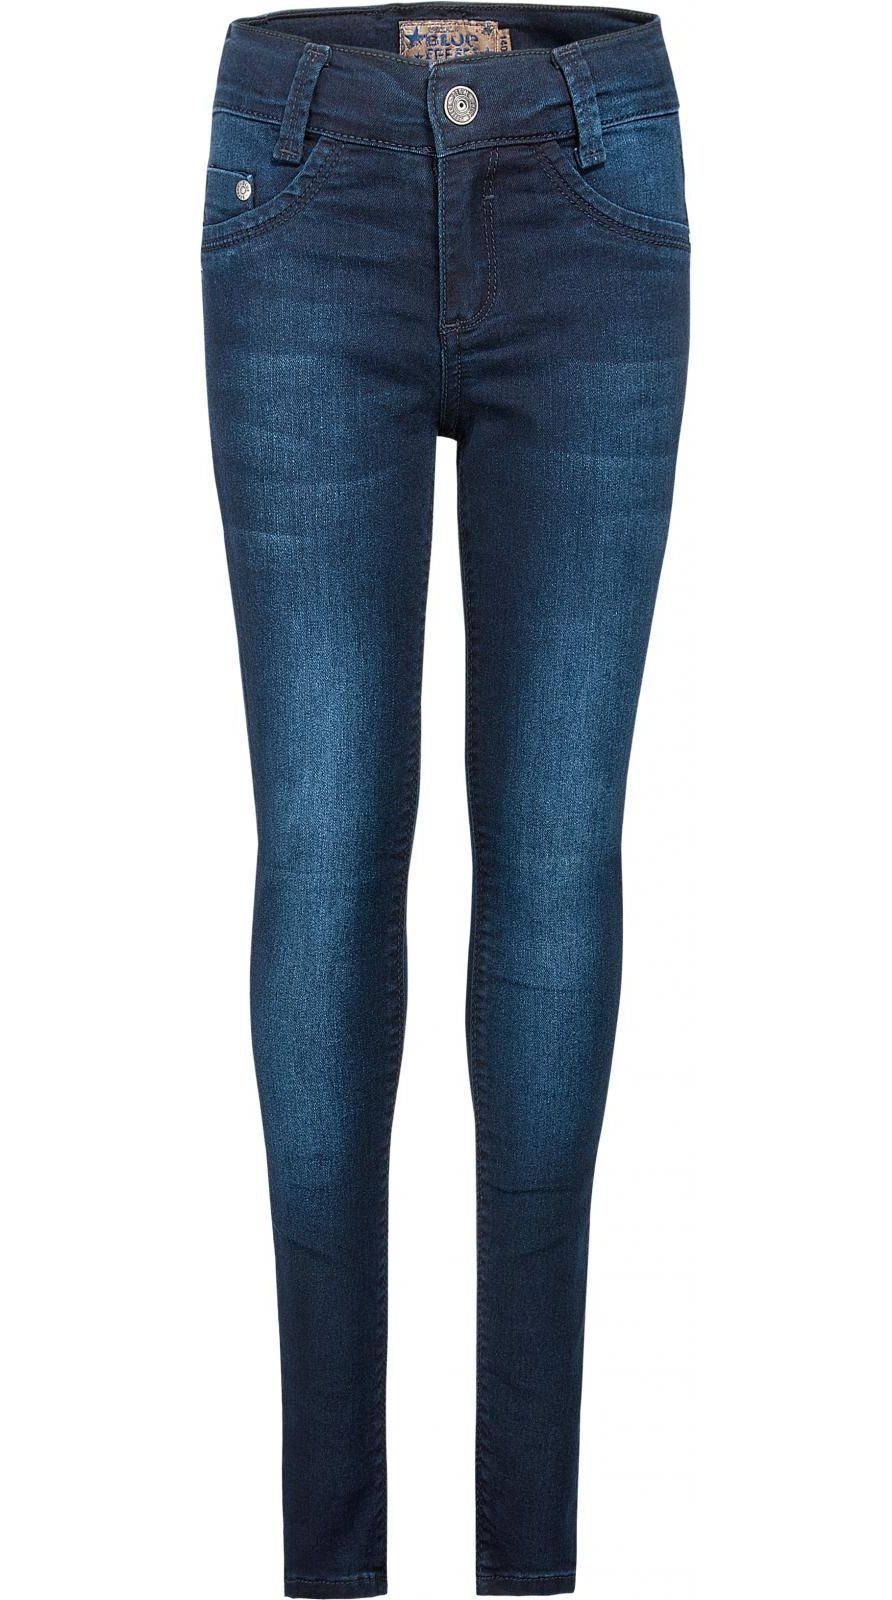 Mädchen Slim-Fit Jeans online kaufen | OTTO